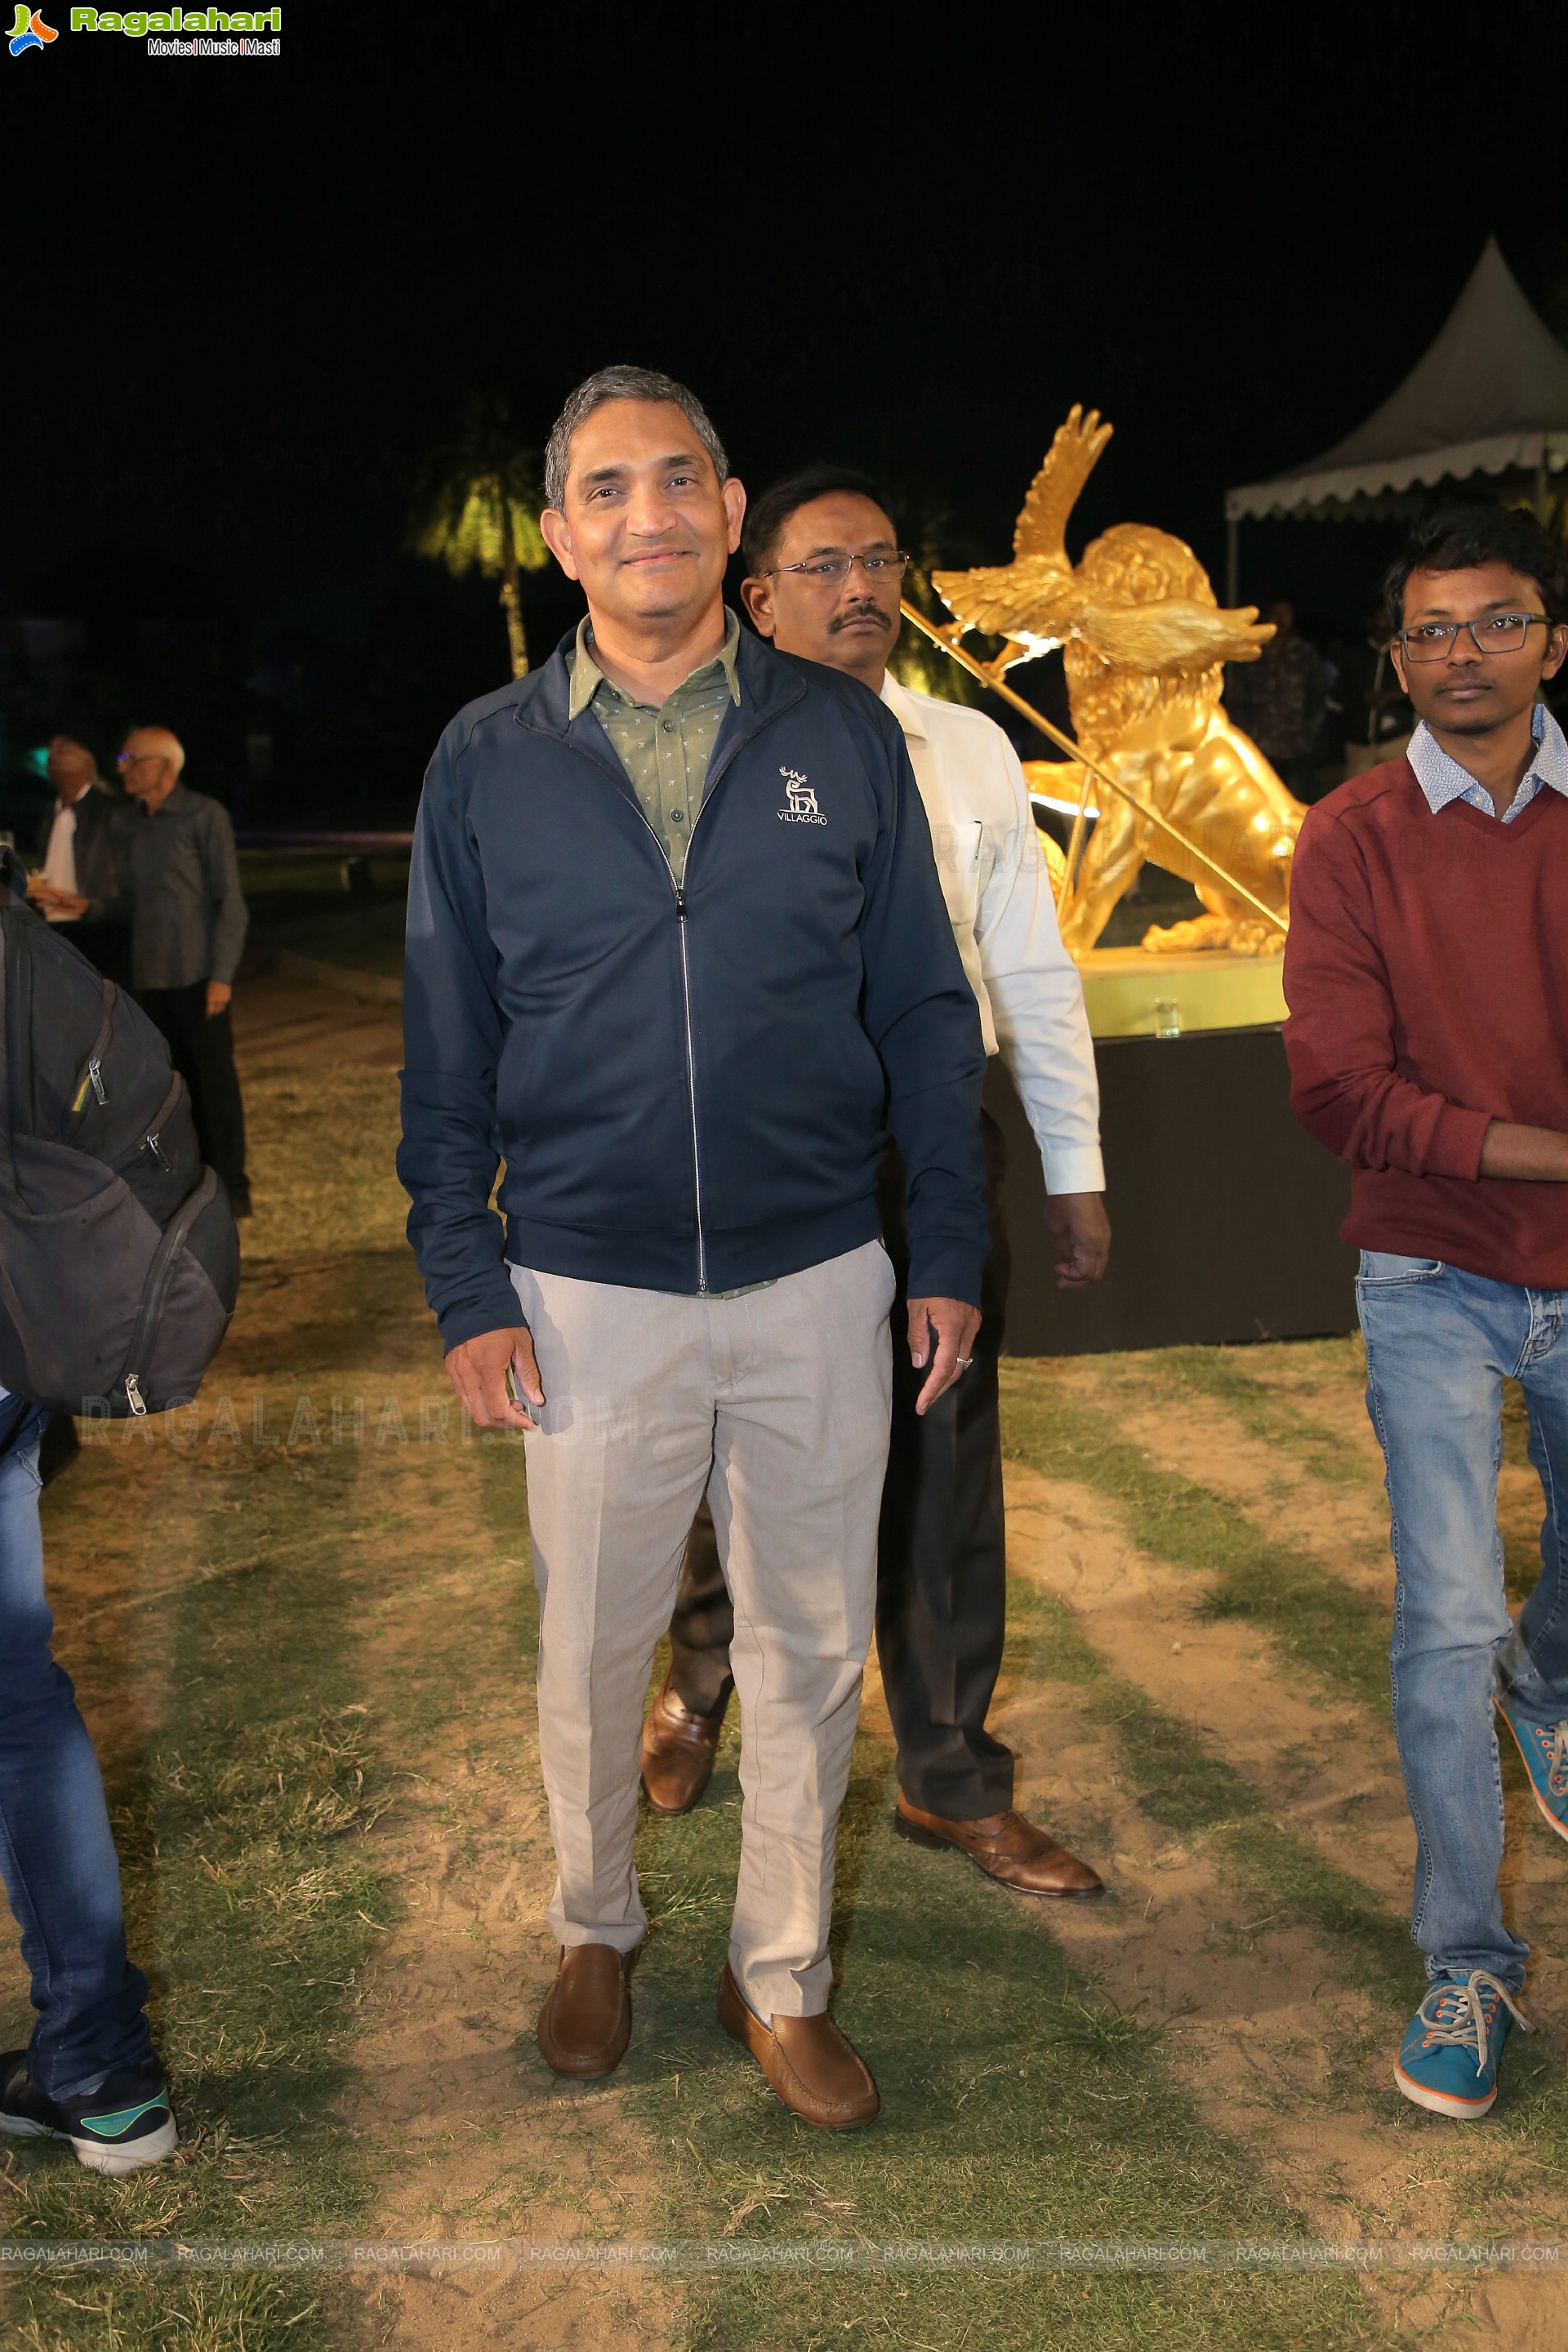 Vishwa Samudra Golden Eagles Corporate Golf Event